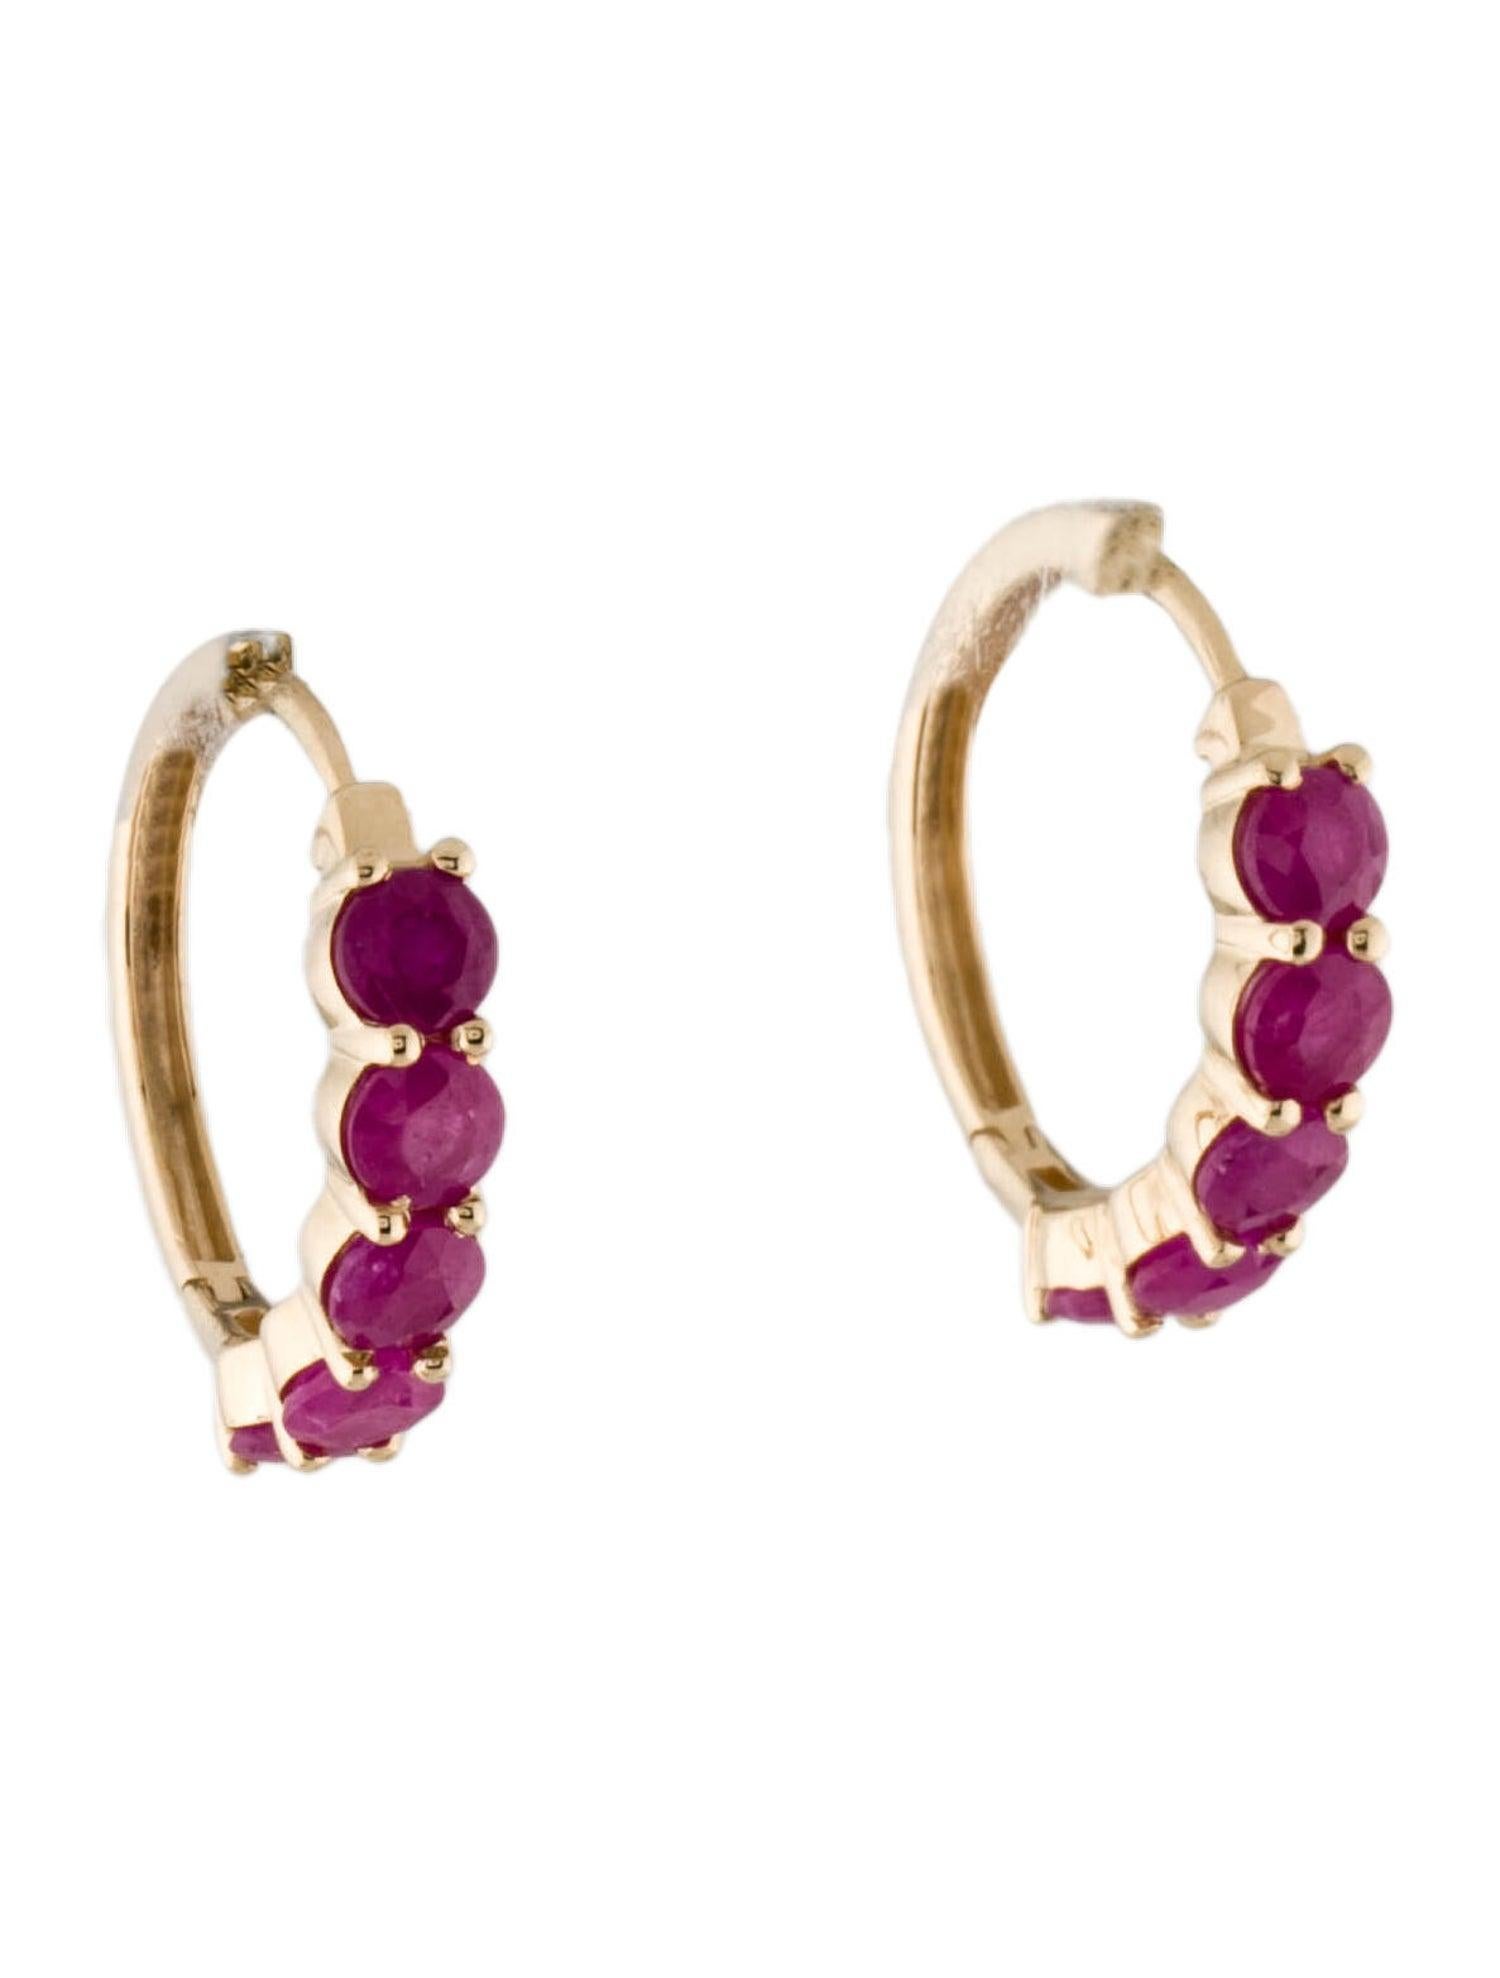 Lassen Sie sich von unseren Blooms of Passion Ruby Earrings verzaubern, einem Meisterwerk aus der luxuriösen Kollektion von Jeweltique. Tauchen Sie ein in das reiche Erbe von über 50 Jahren Handwerkskunst und Leidenschaft für Qualität, die unsere